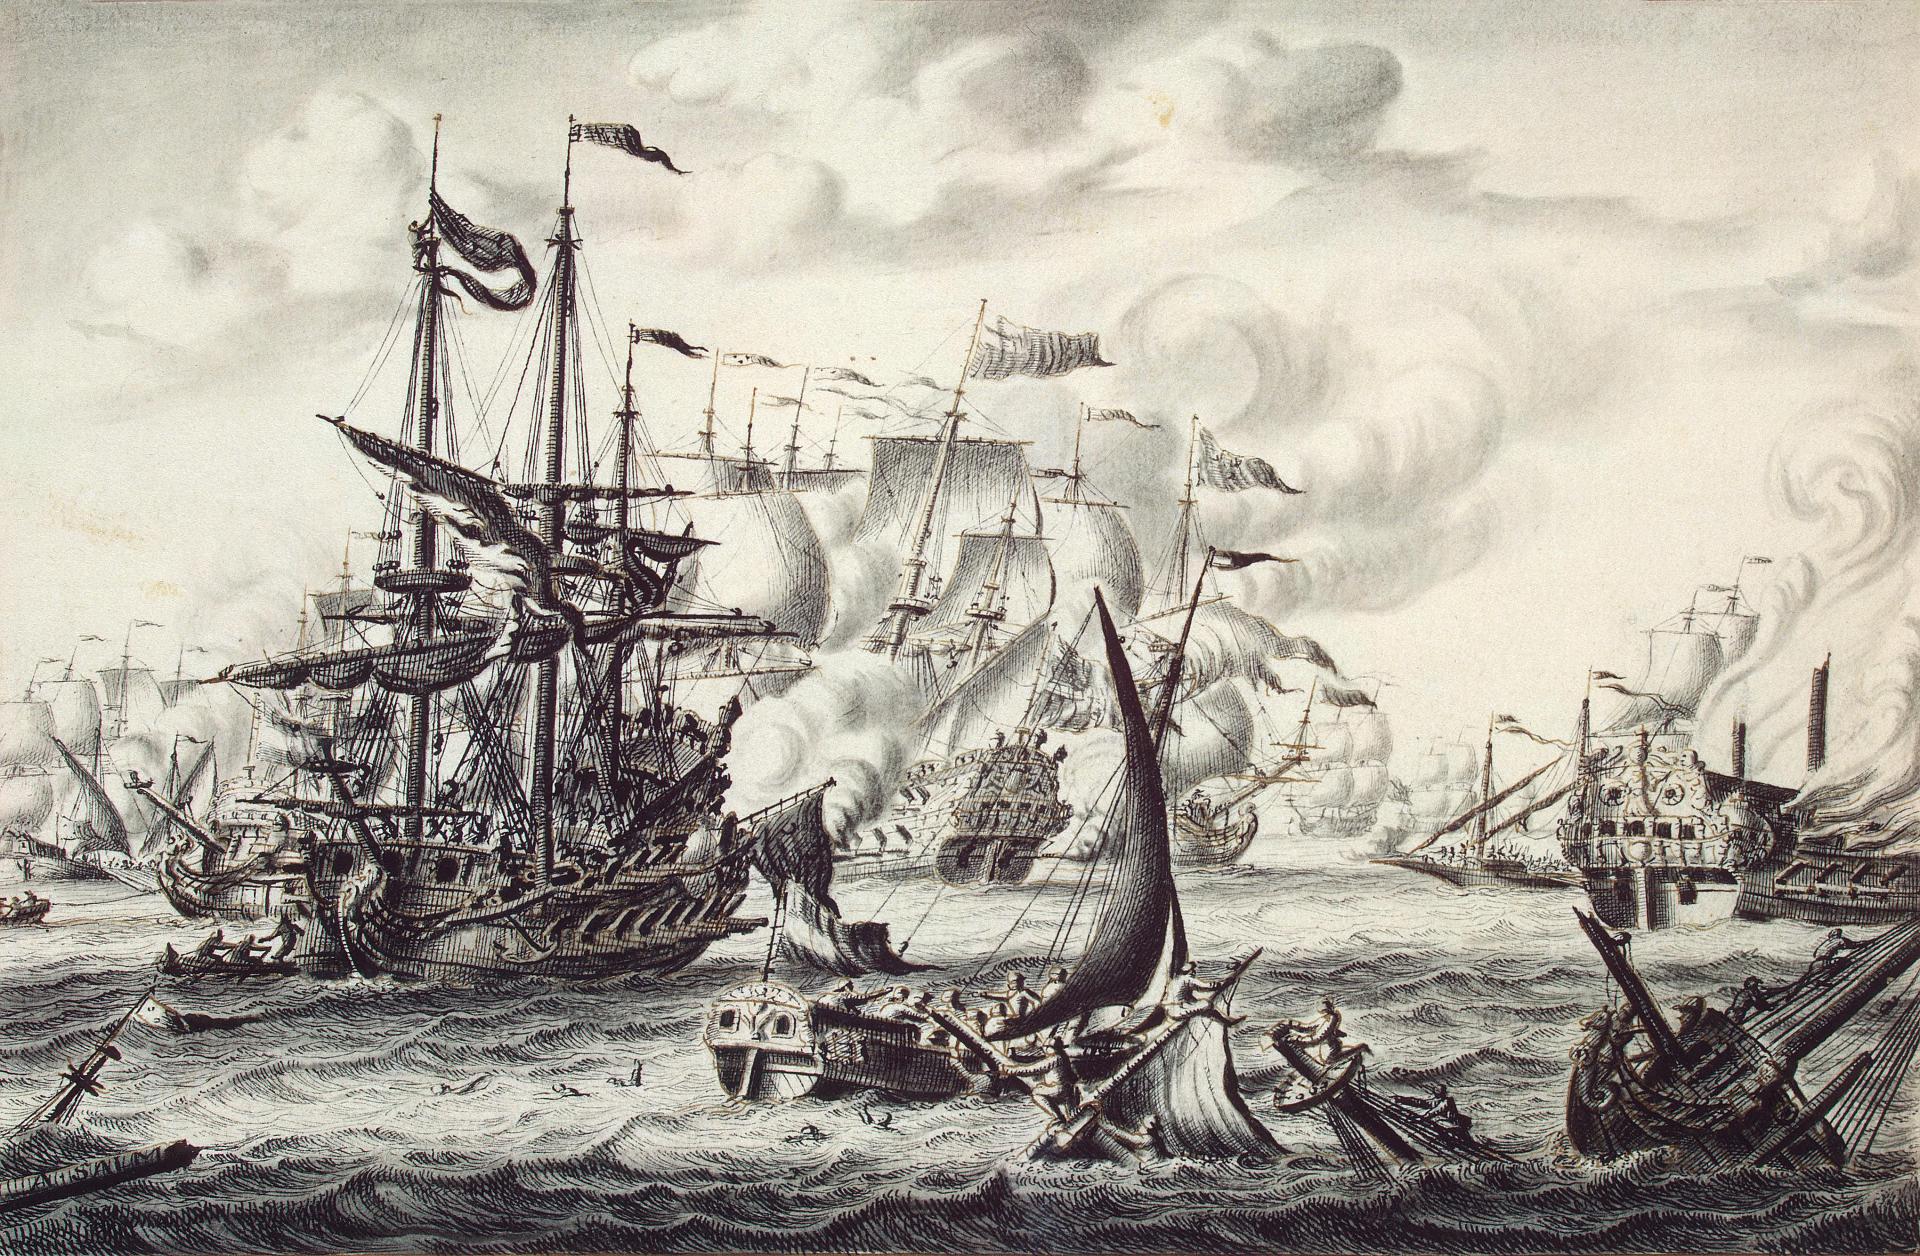 Адриен ван Сальм. "Морское сражение". Около 1707. Эрмитаж, Санкт-Петербург.